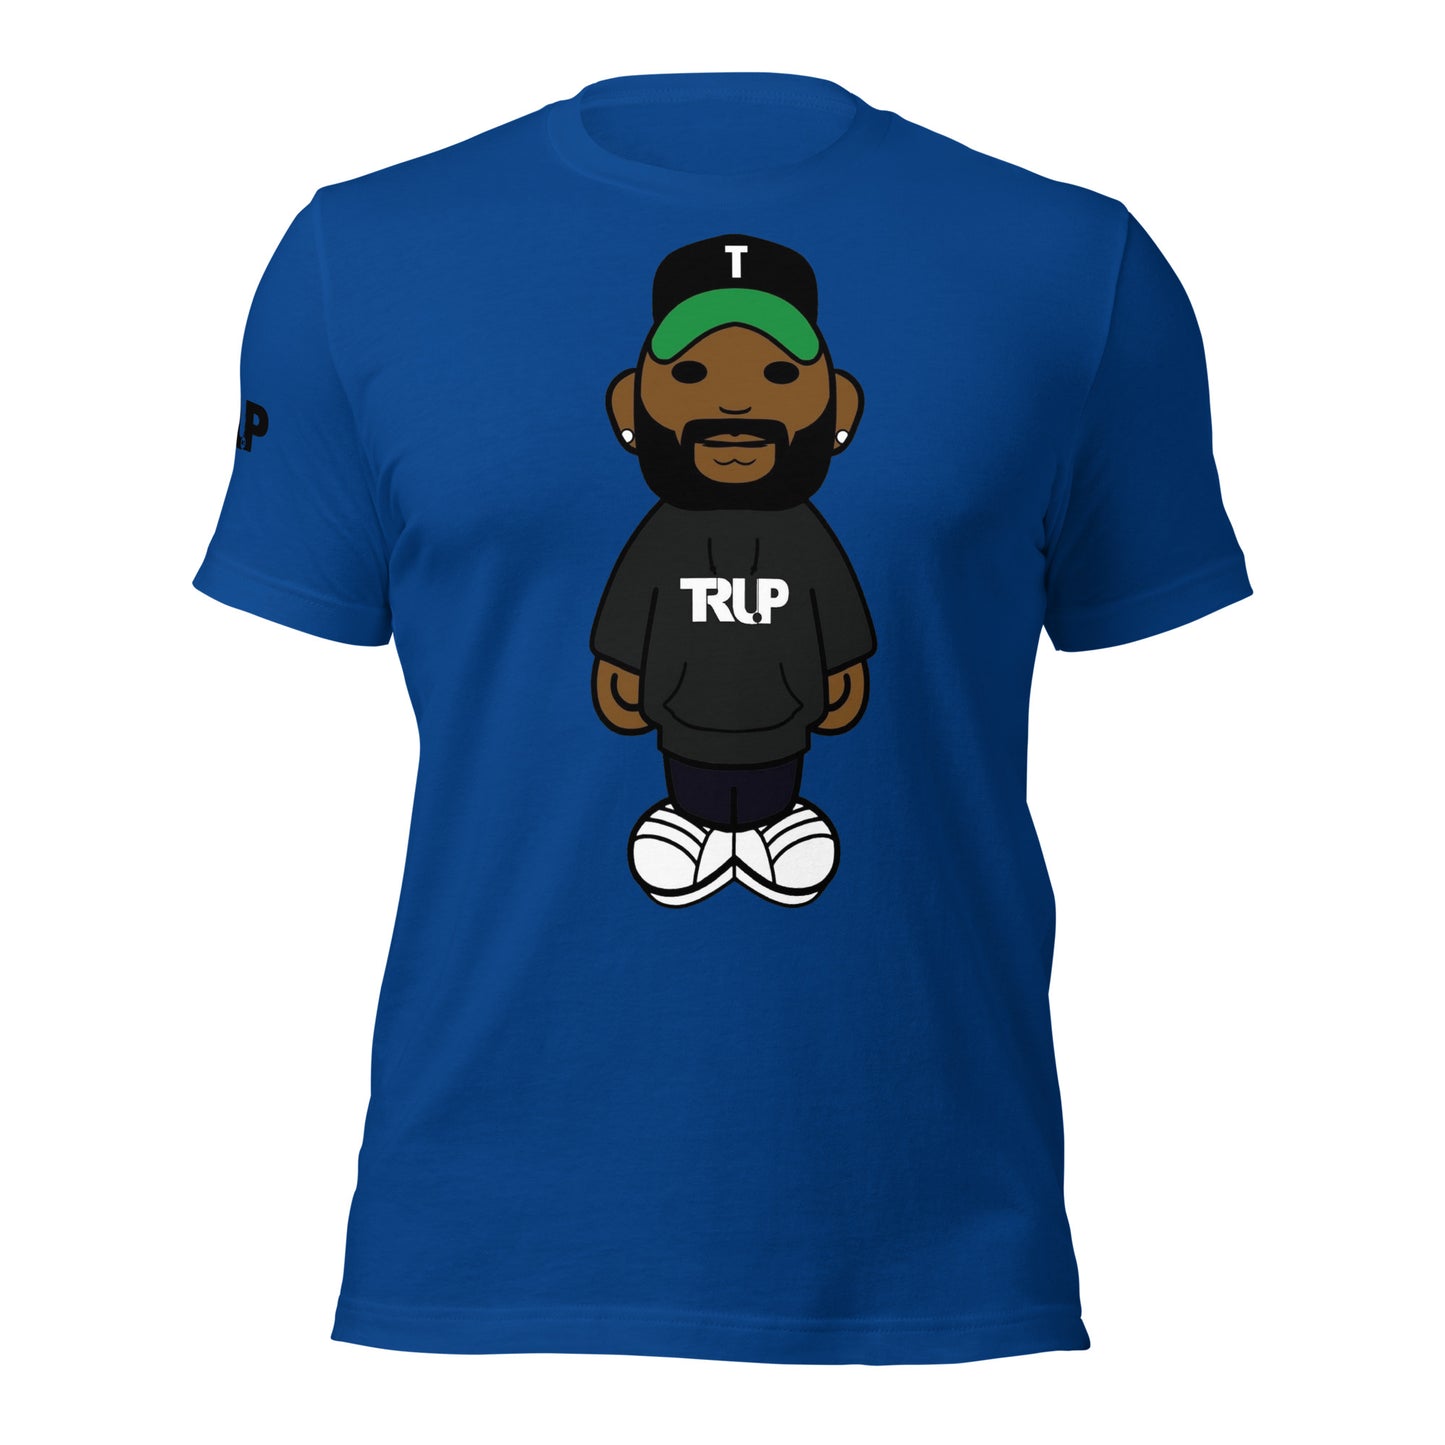 Truey P t-shirt